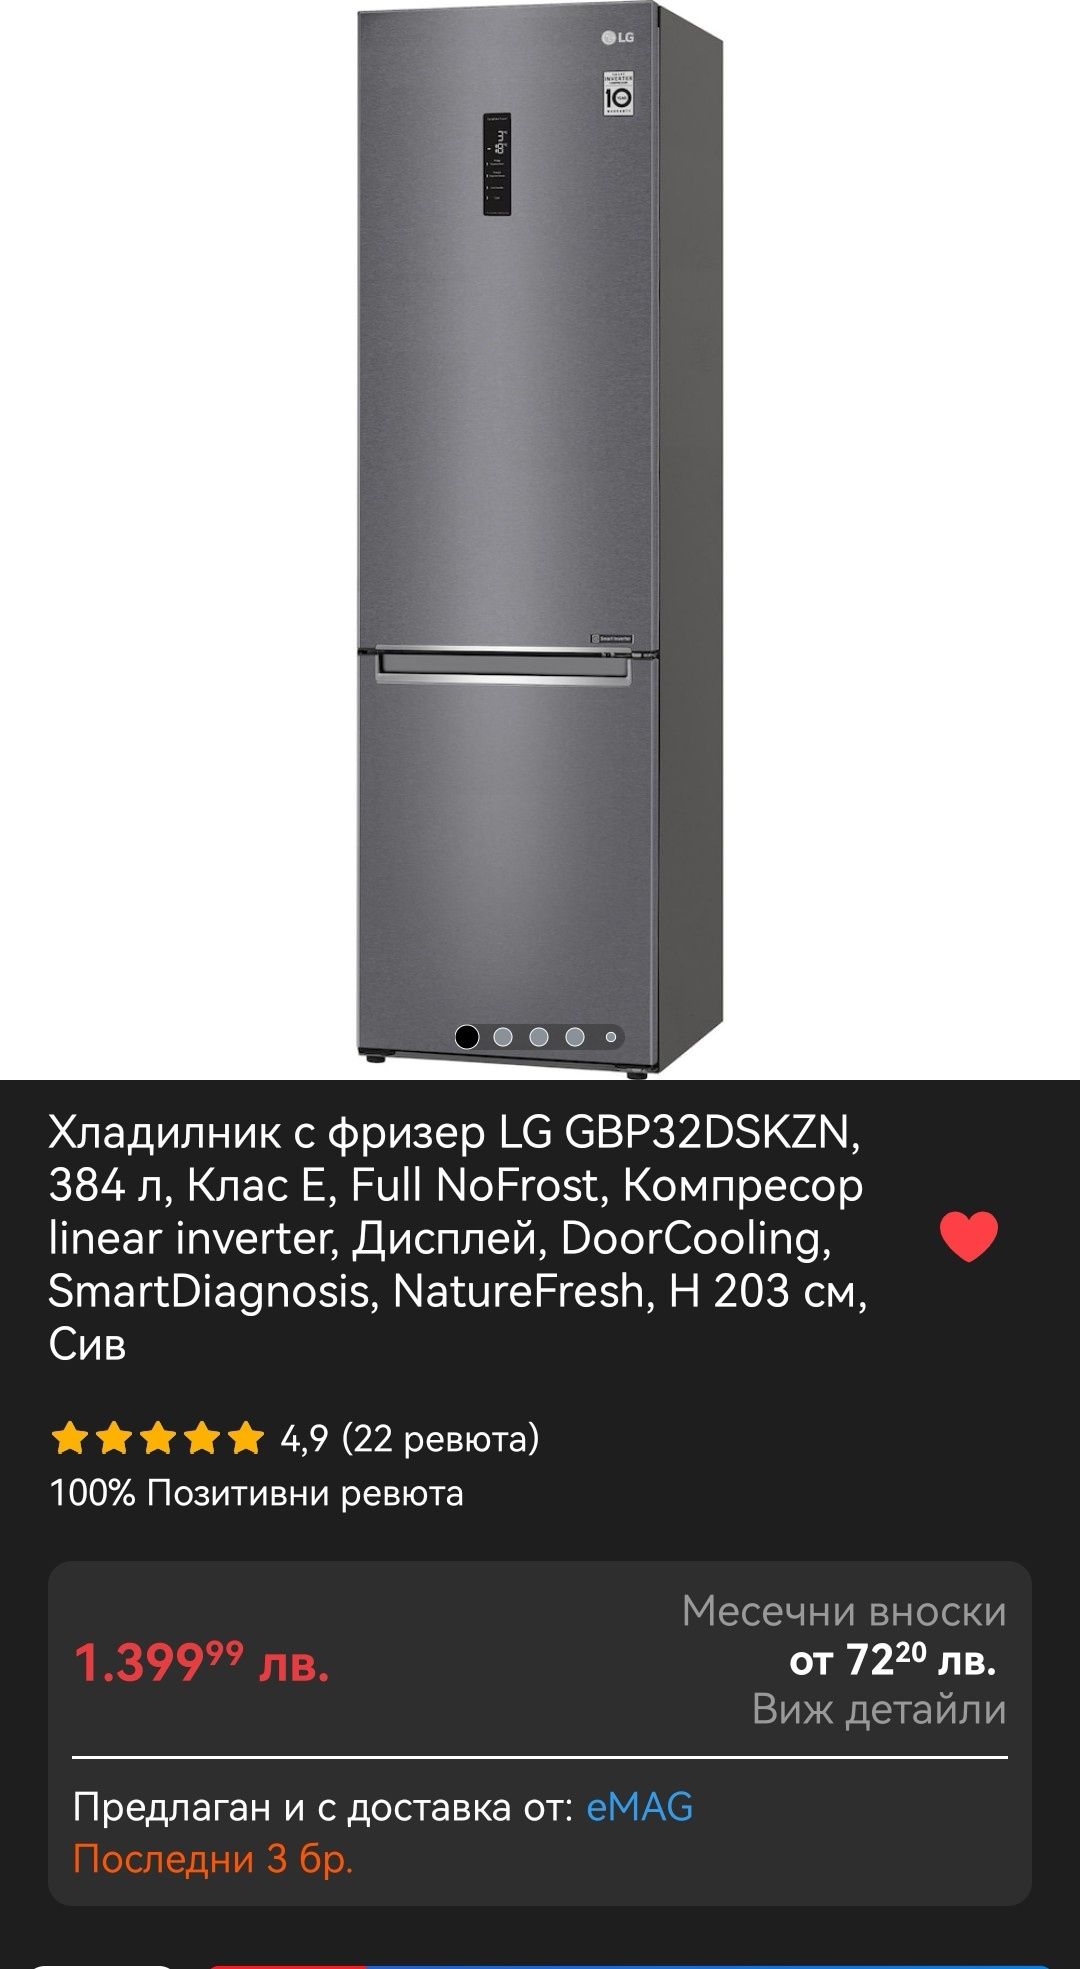 Хладилник с фризер LG